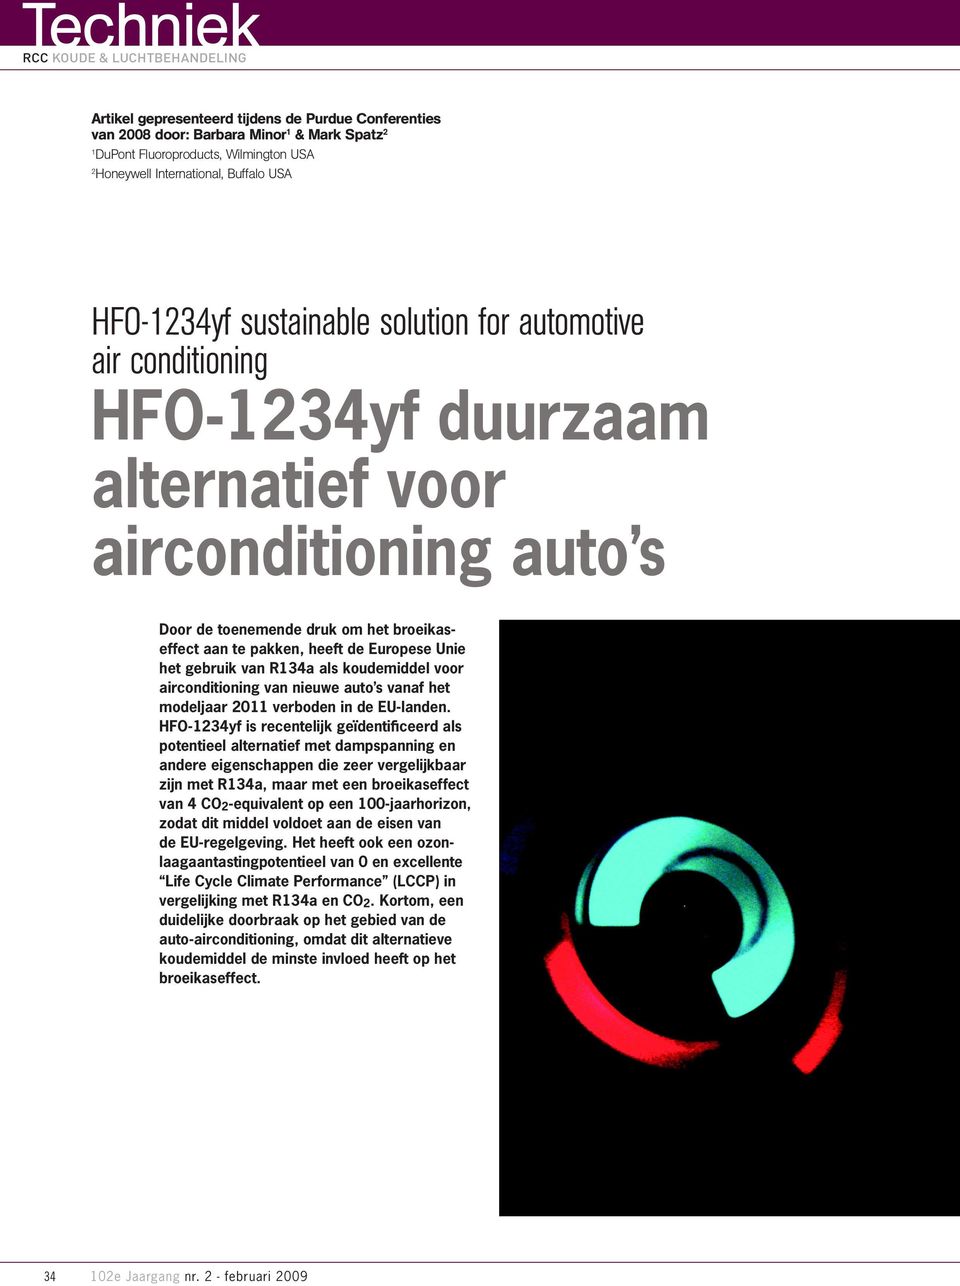 het gebruik van R134a als koudemiddel voor airconditioning van nieuwe auto s vanaf het modeljaar 2011 verboden in de EU-landen.